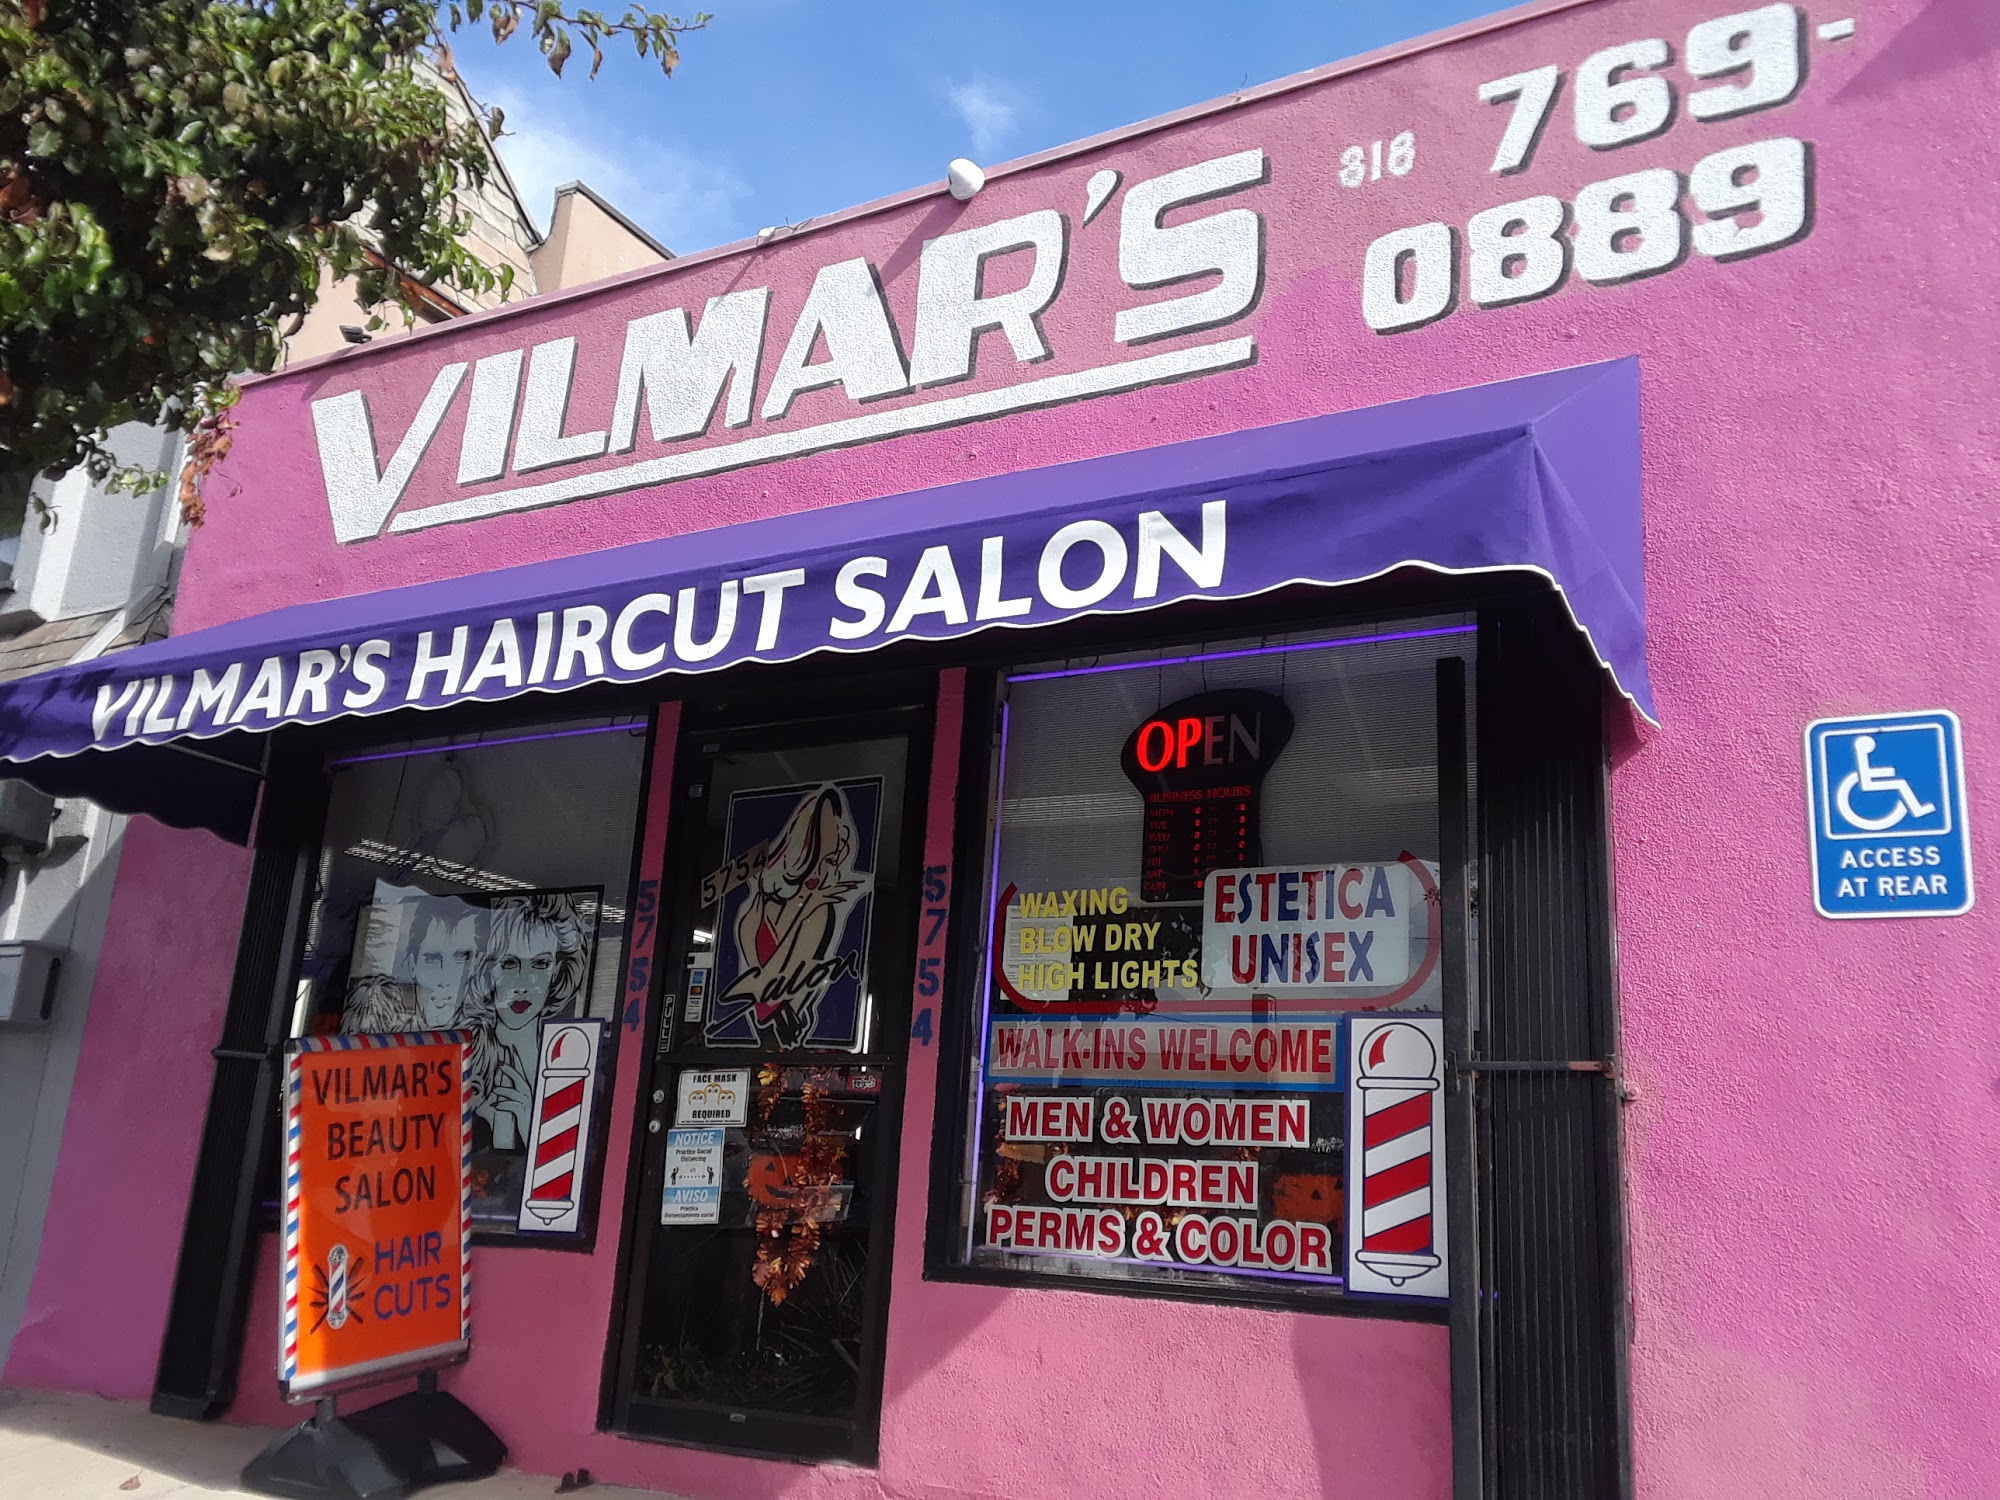 Vilmar's Beauty Salon